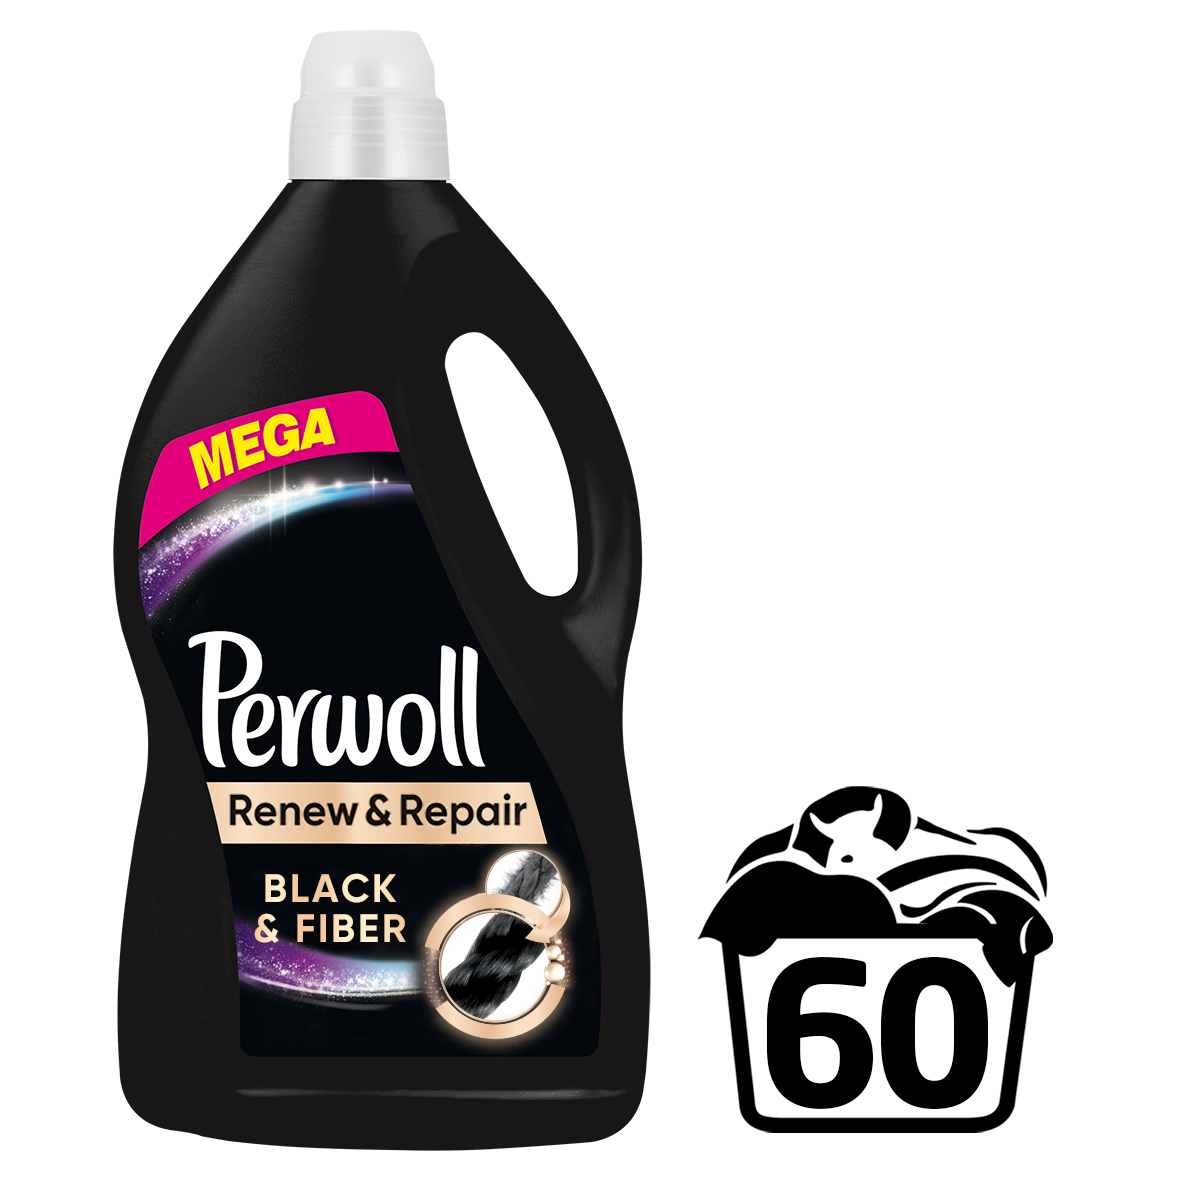 Средство для стирки Perwoll для черных вещей, 3.6 л (743232) - фото 1